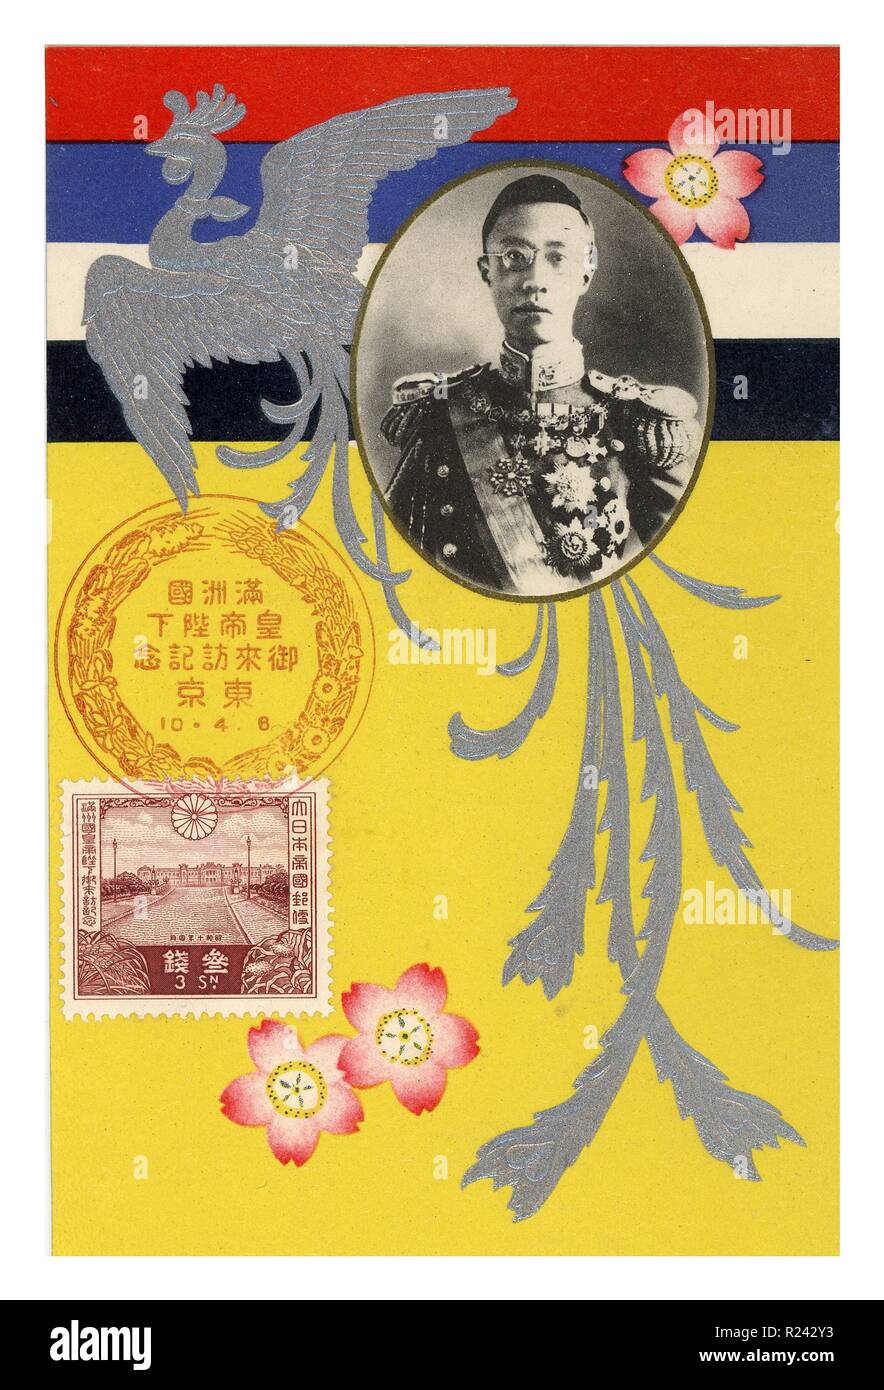 Il Cinese EmperoraEos mancesi data visita a Tokyo in Giappone dal 6 aprile 1935. Cartolina raffigurante Pu Yi il fantoccio imperatore della Manciuria in Cina. Foto Stock